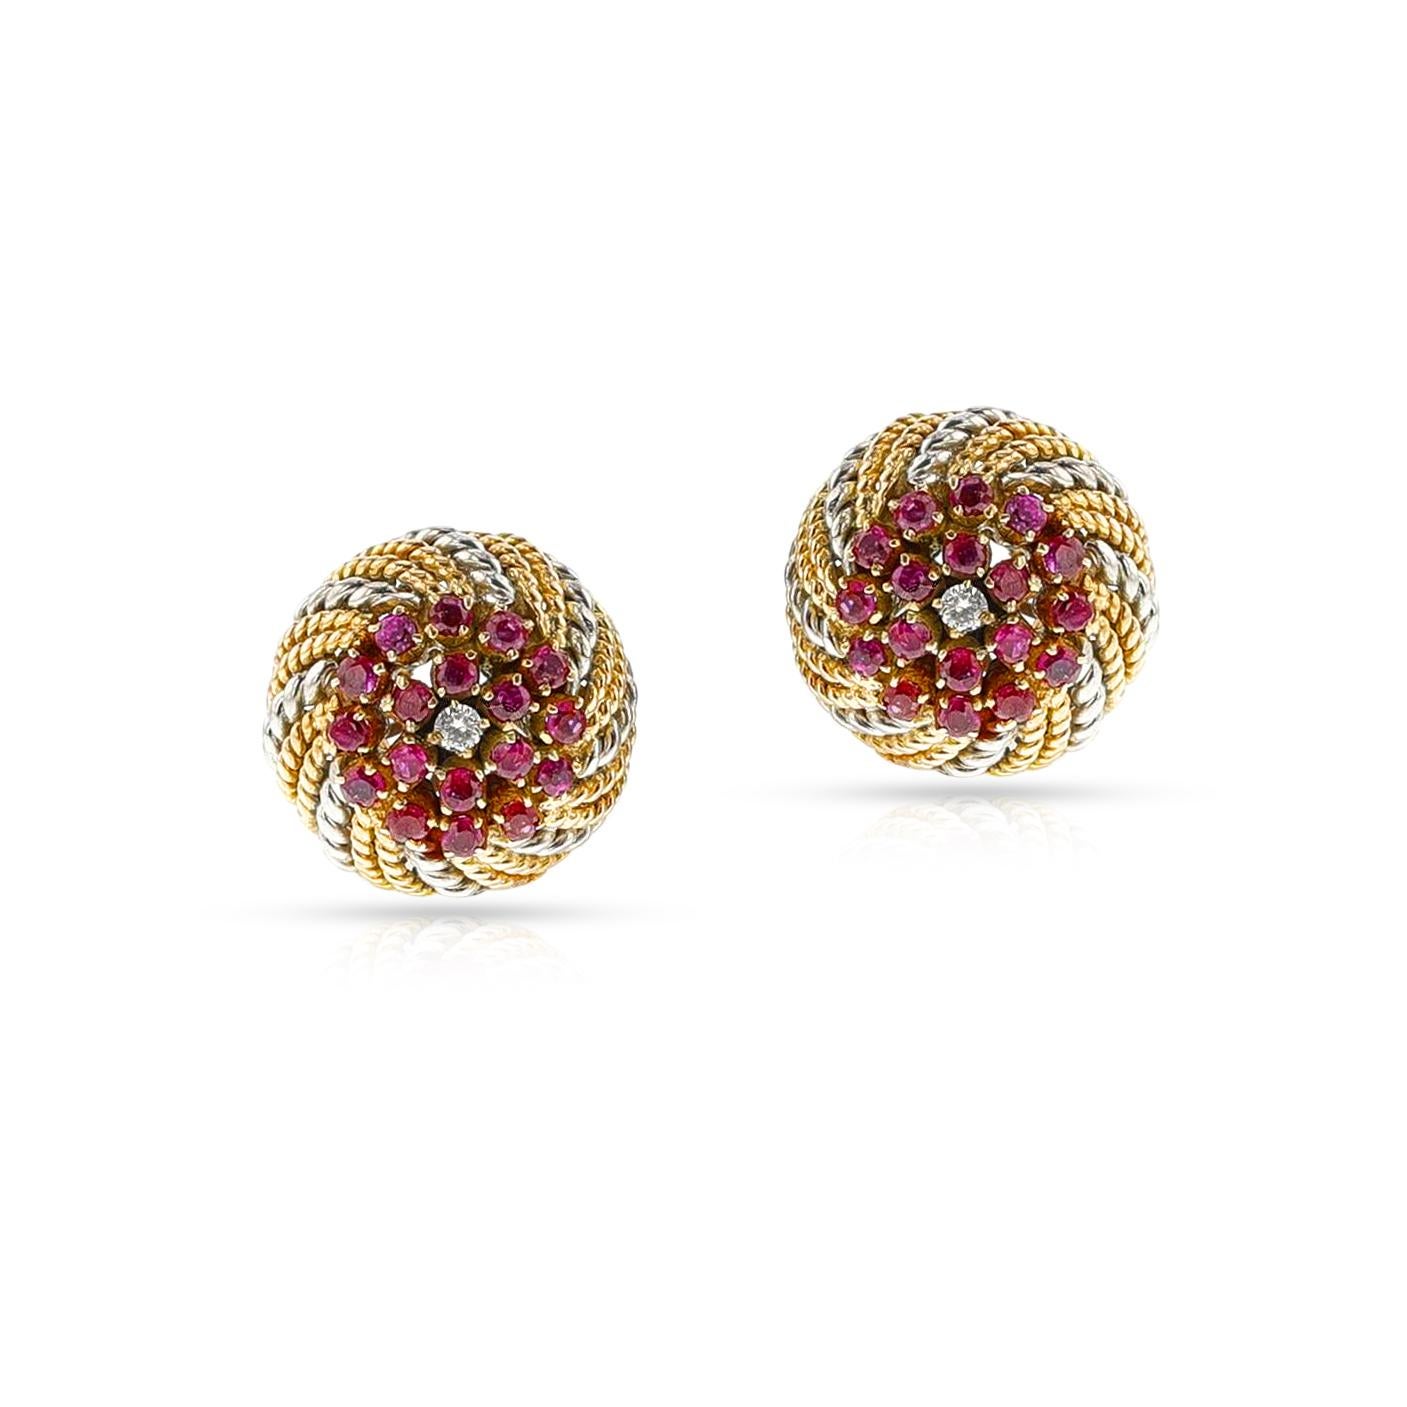 Ein Paar Ohrringe aus Gelb- und Weißgold mit Rubinen und Diamanten aus 14-karätigem Gelbgold in Seilarbeit. Das Gesamtgewicht des Ohrrings beträgt 13,80 Gramm. 

 

1356-AAEFRT